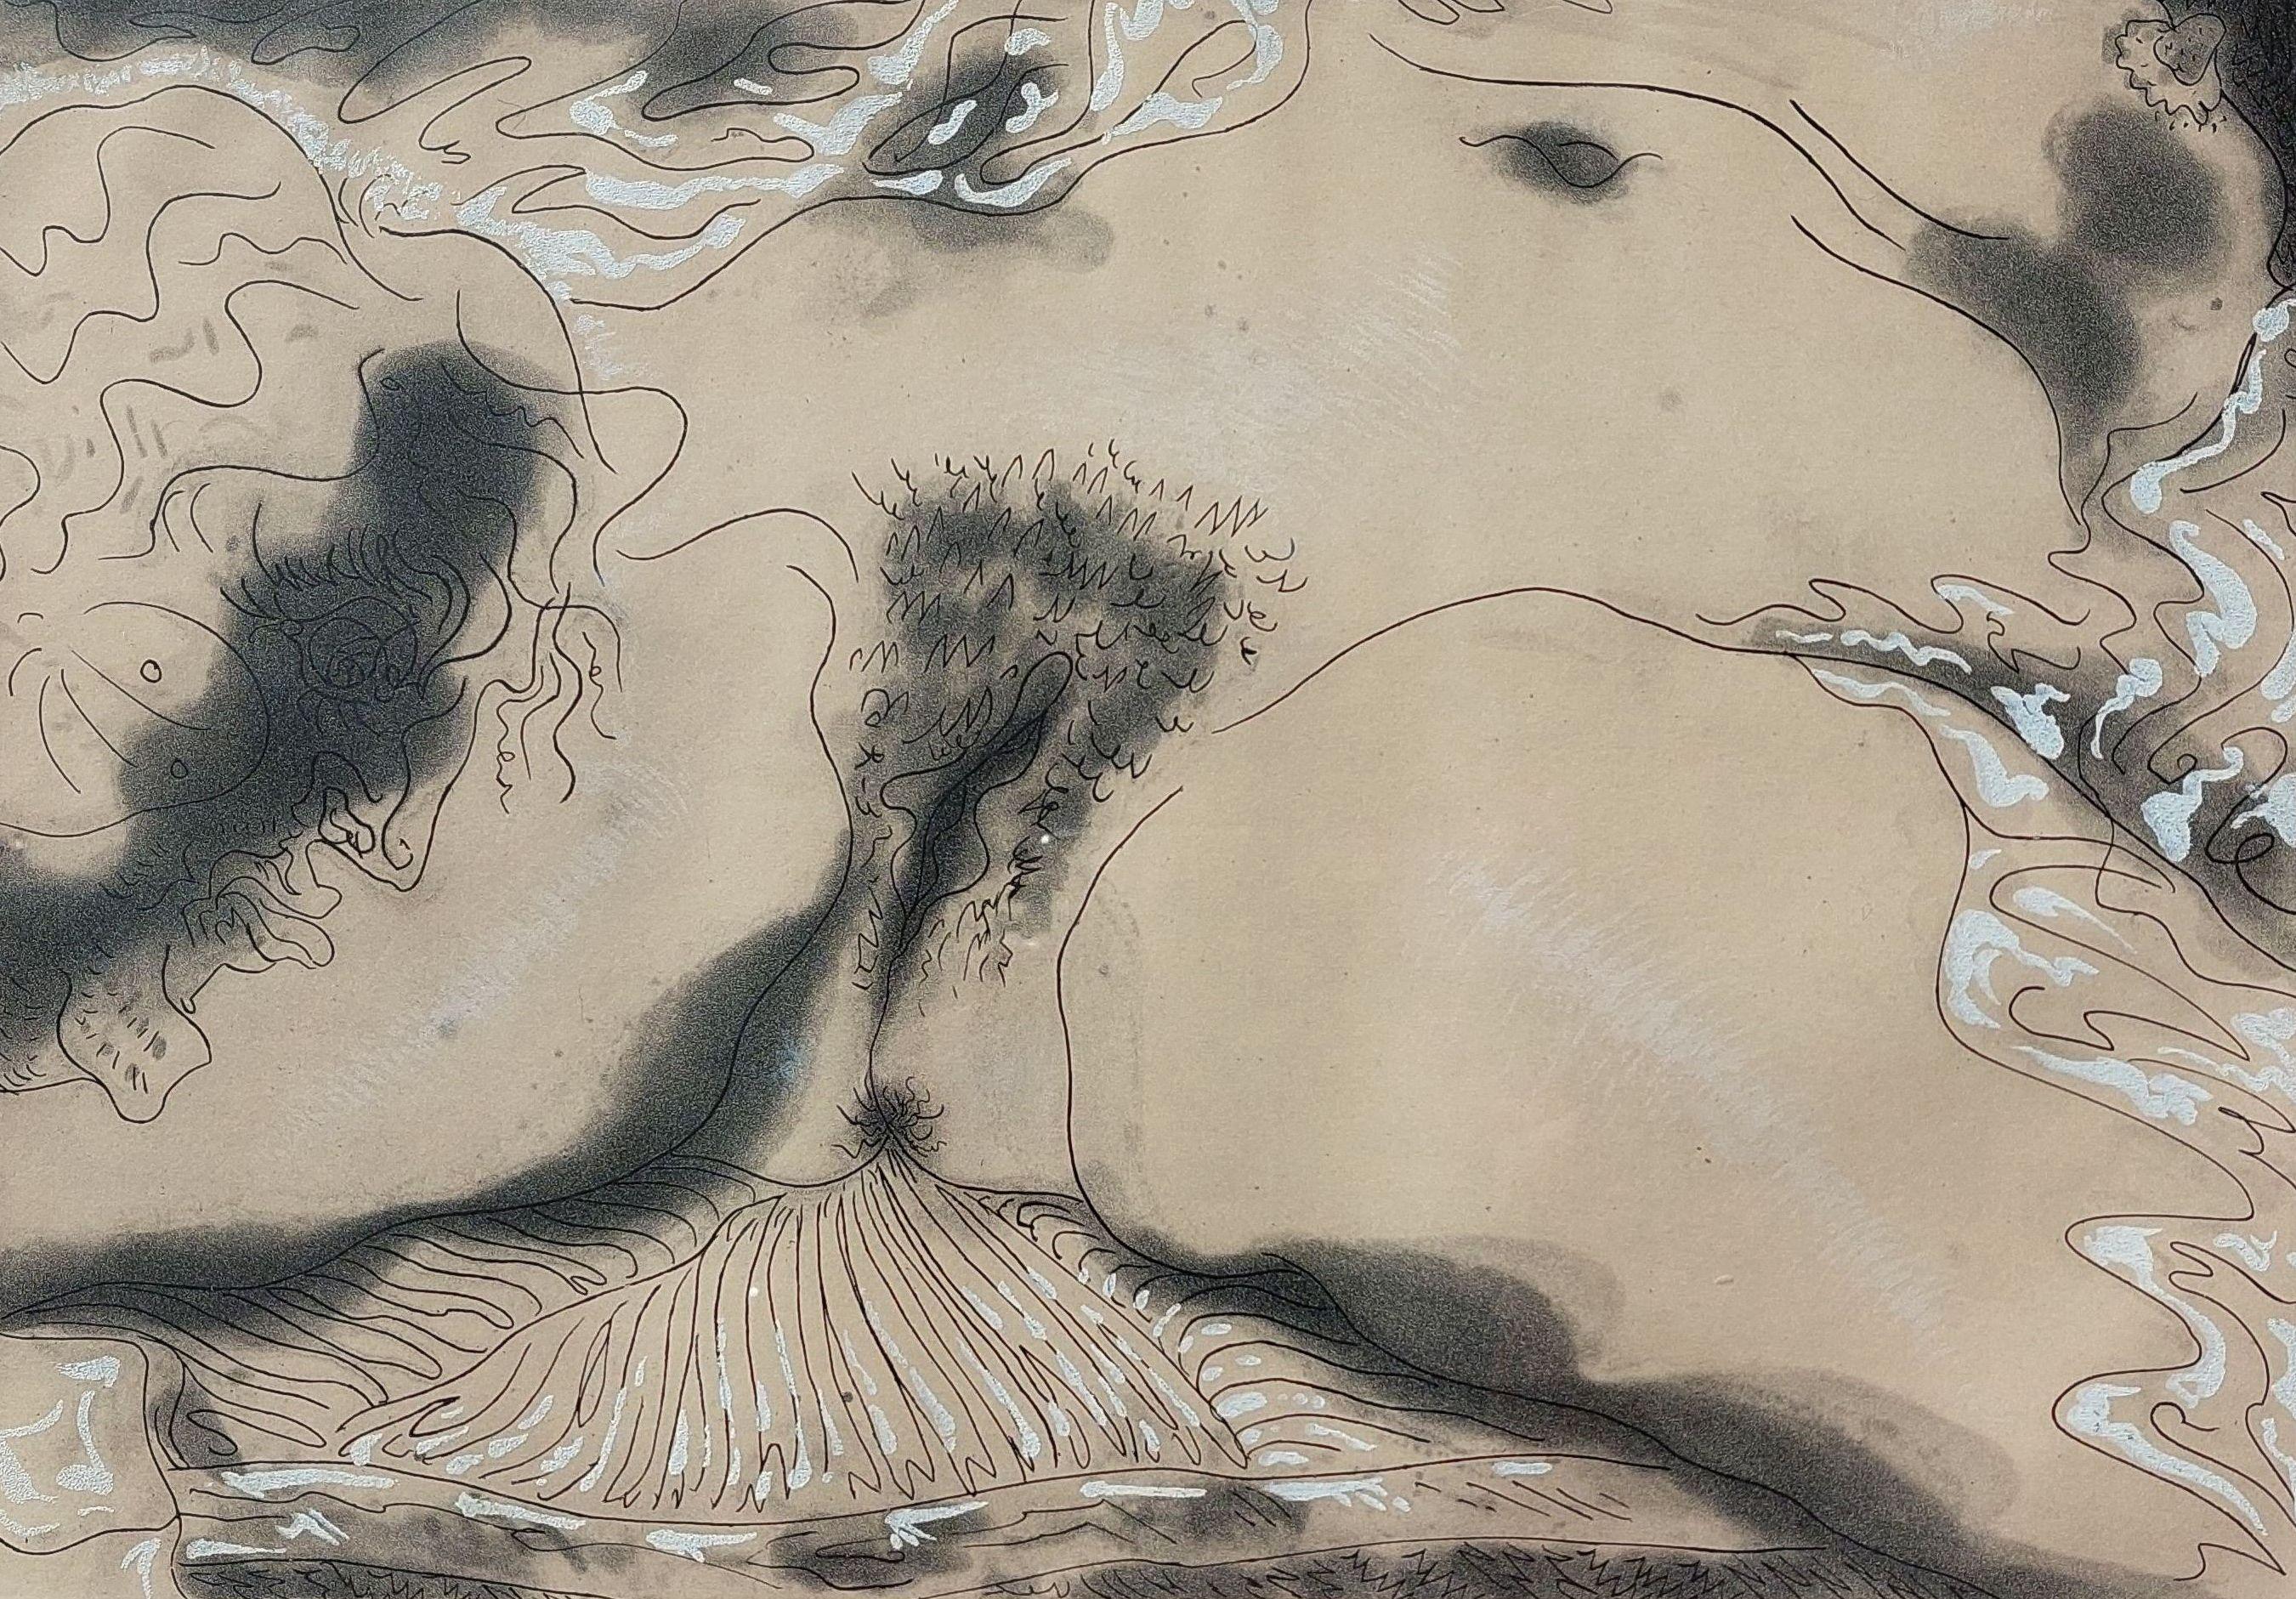 André Masson Nude Print - Hommage à Courbet. Paper/etching. 40/60. 1964. 27 x 38 cm.